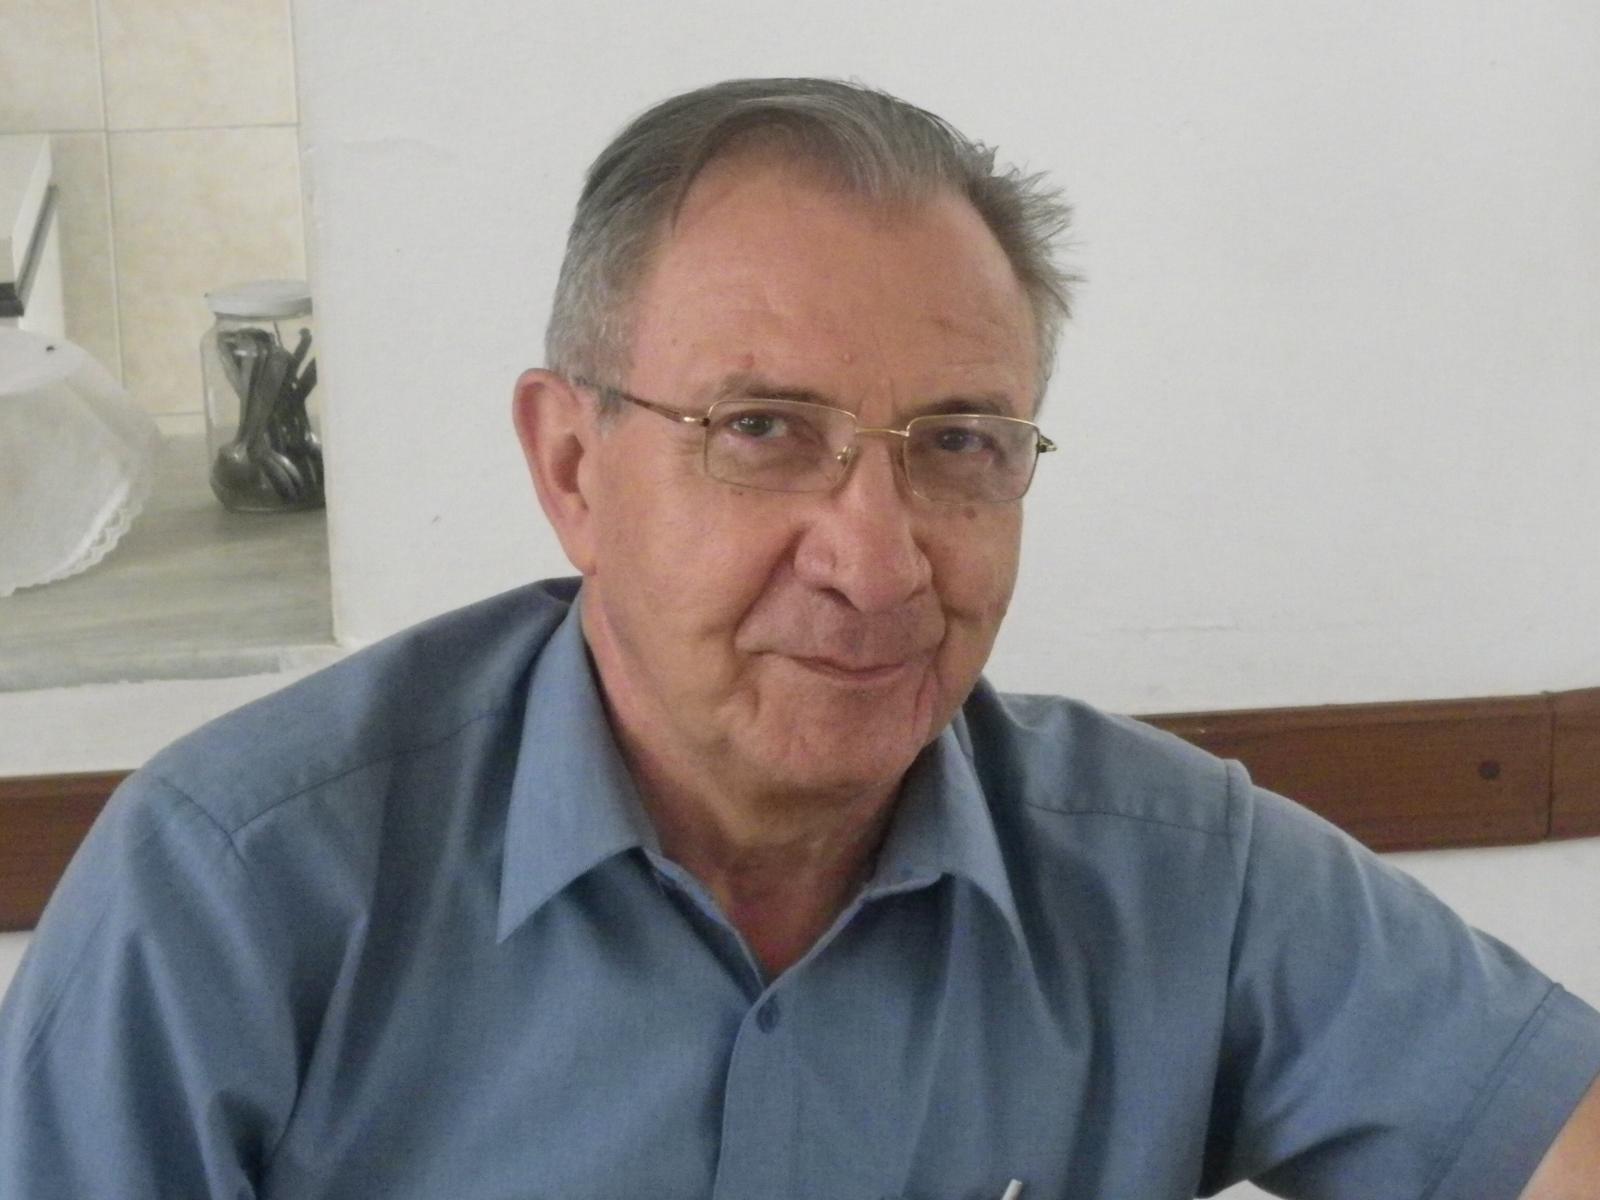 Faleceu dom André de Witte, presidente da Comissão Pastoral da Terra - CNBB